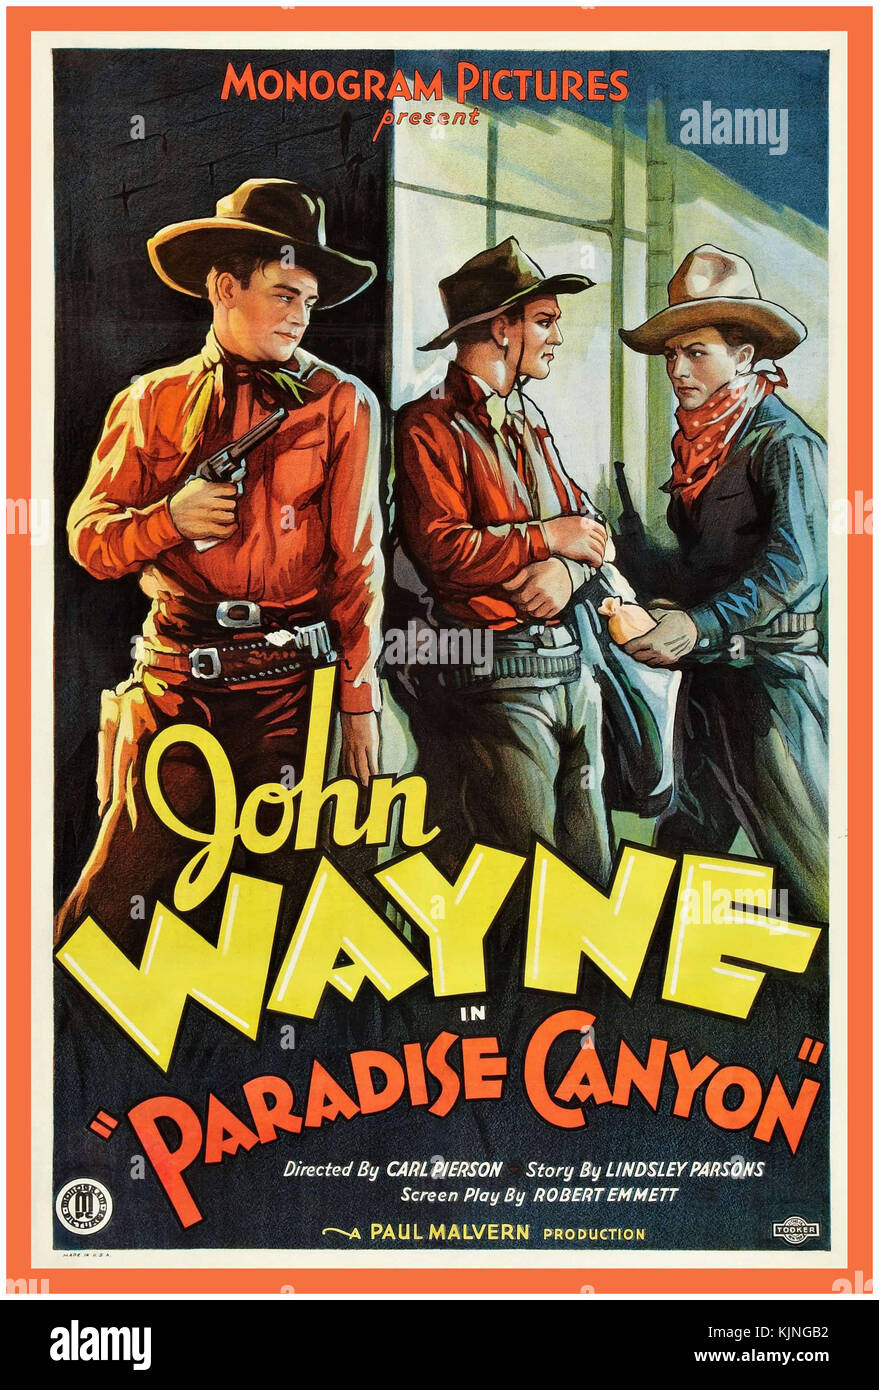 JOHN WAYNE Jahrgang 1930 John Wayne frühen Film Poster' PARADISE CANYON' Film Monogramm Bilder Regisseur Carl Pierson Geschichte von lindsley Parsons produziert von Paul Malvern Stockfoto